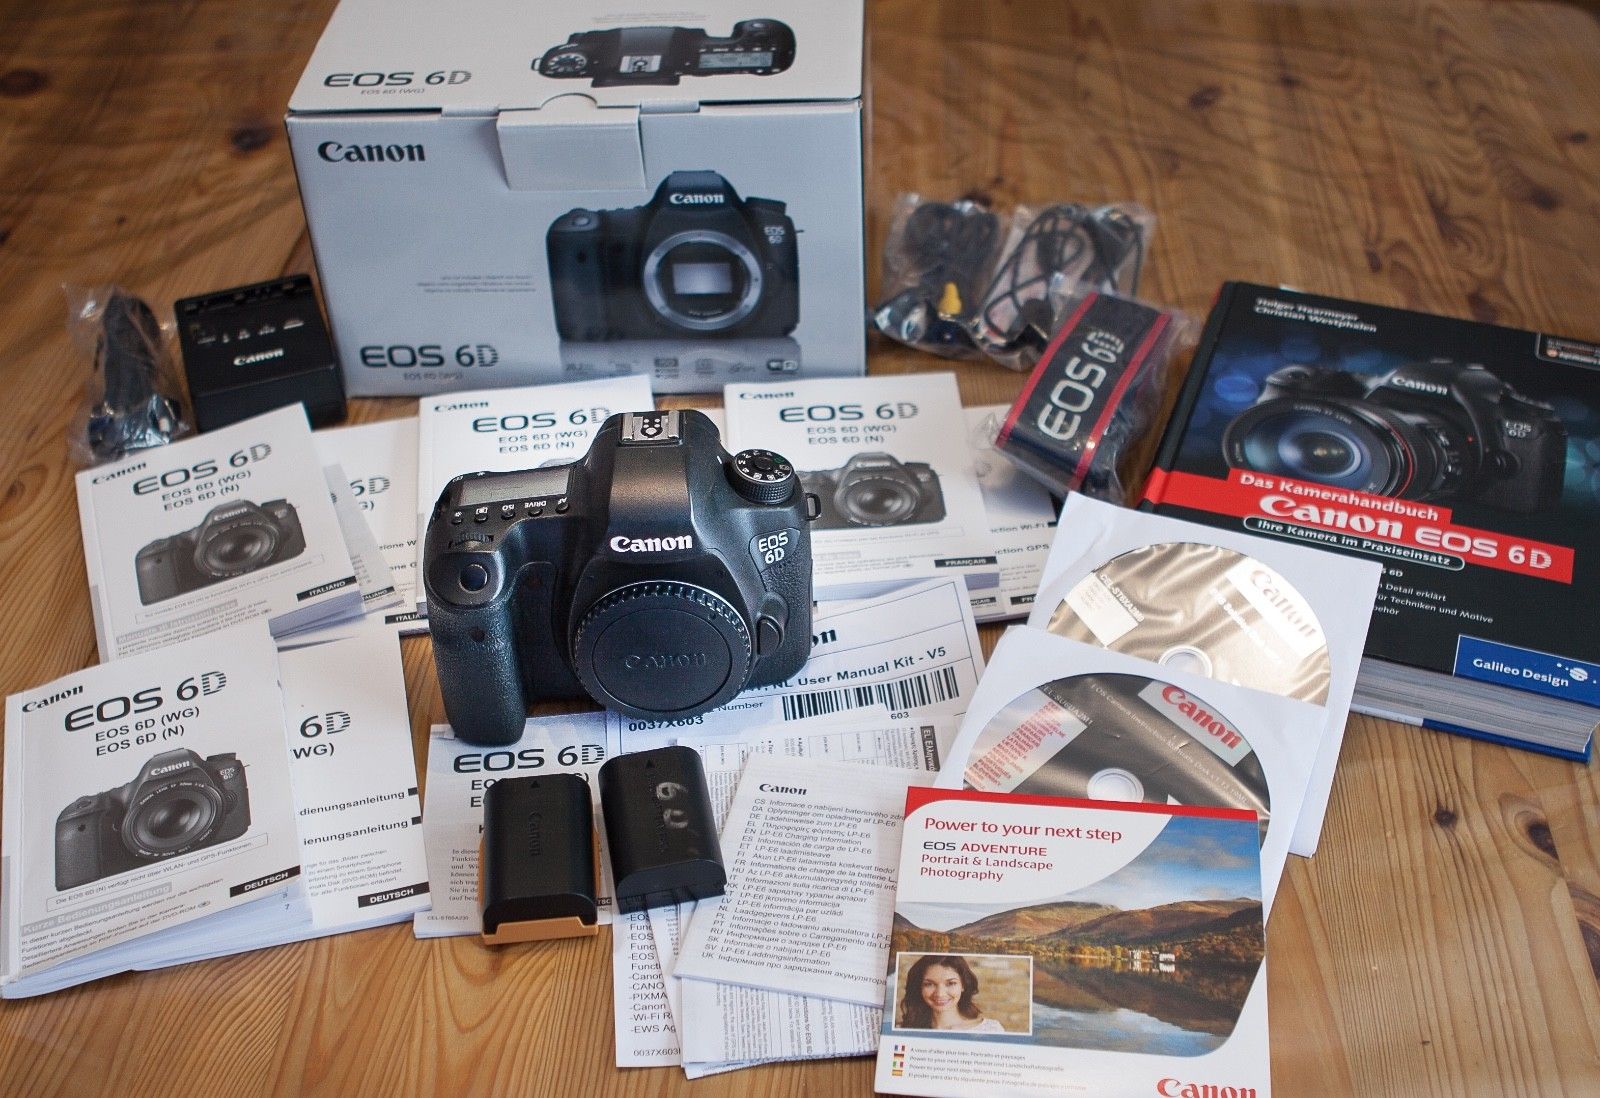 Canon EOS 6D Body 2.2 MP SLR-Digitalkamera - Schwarz nur 3685 Auslösungen